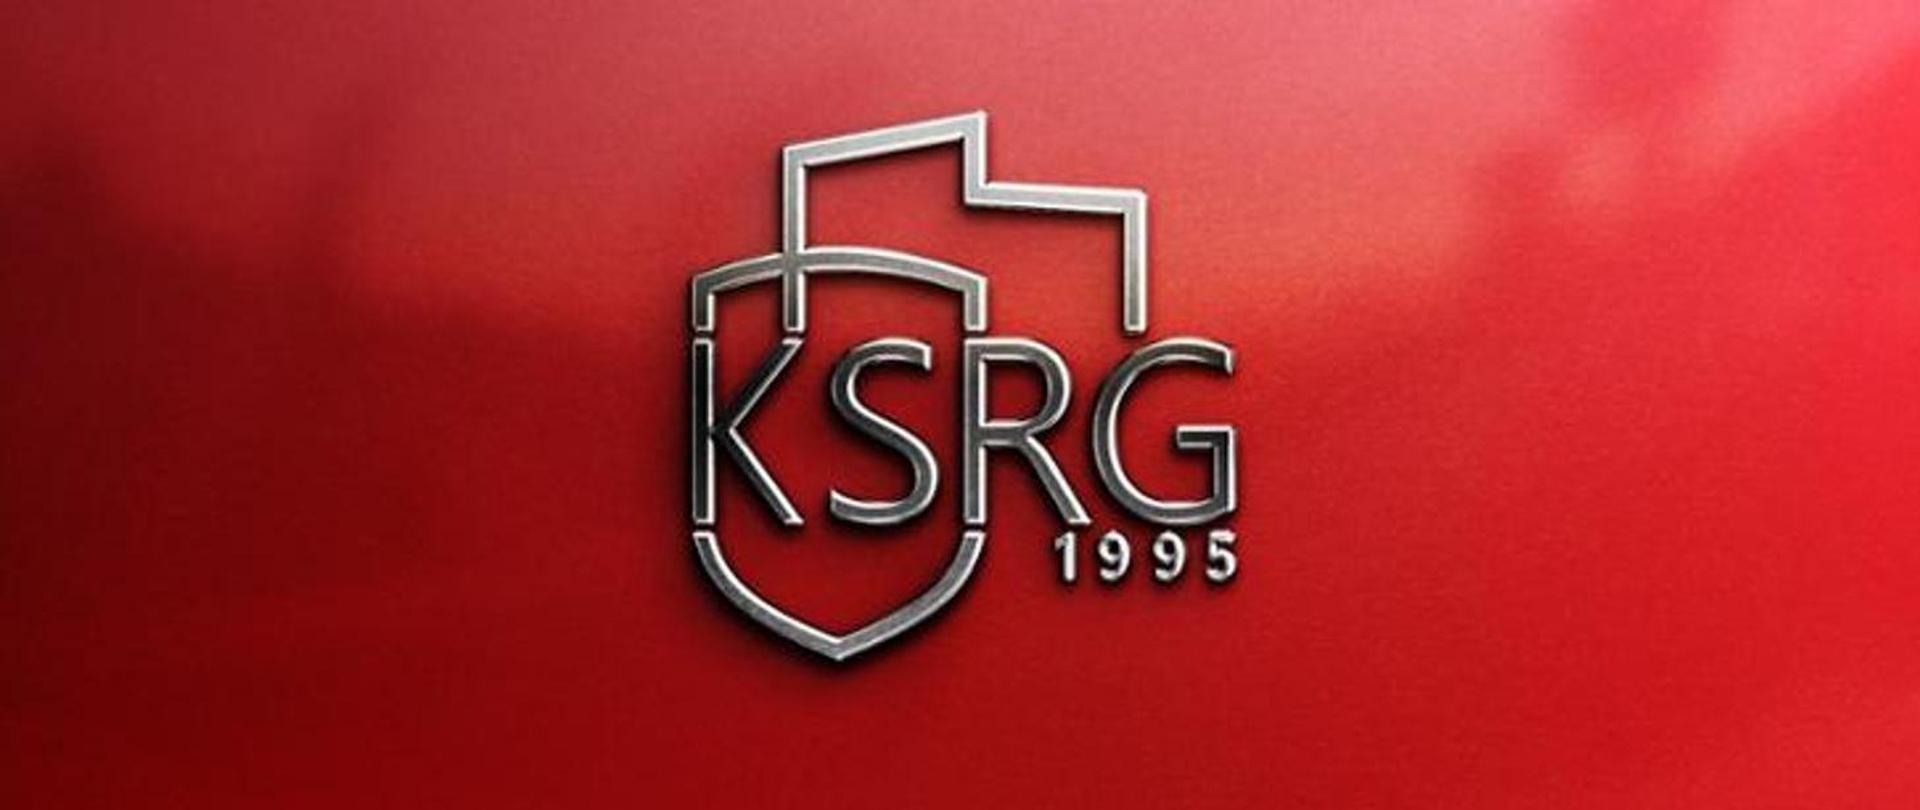 na czerwonym tle napis KSRG nowy logotyp z datą 1995